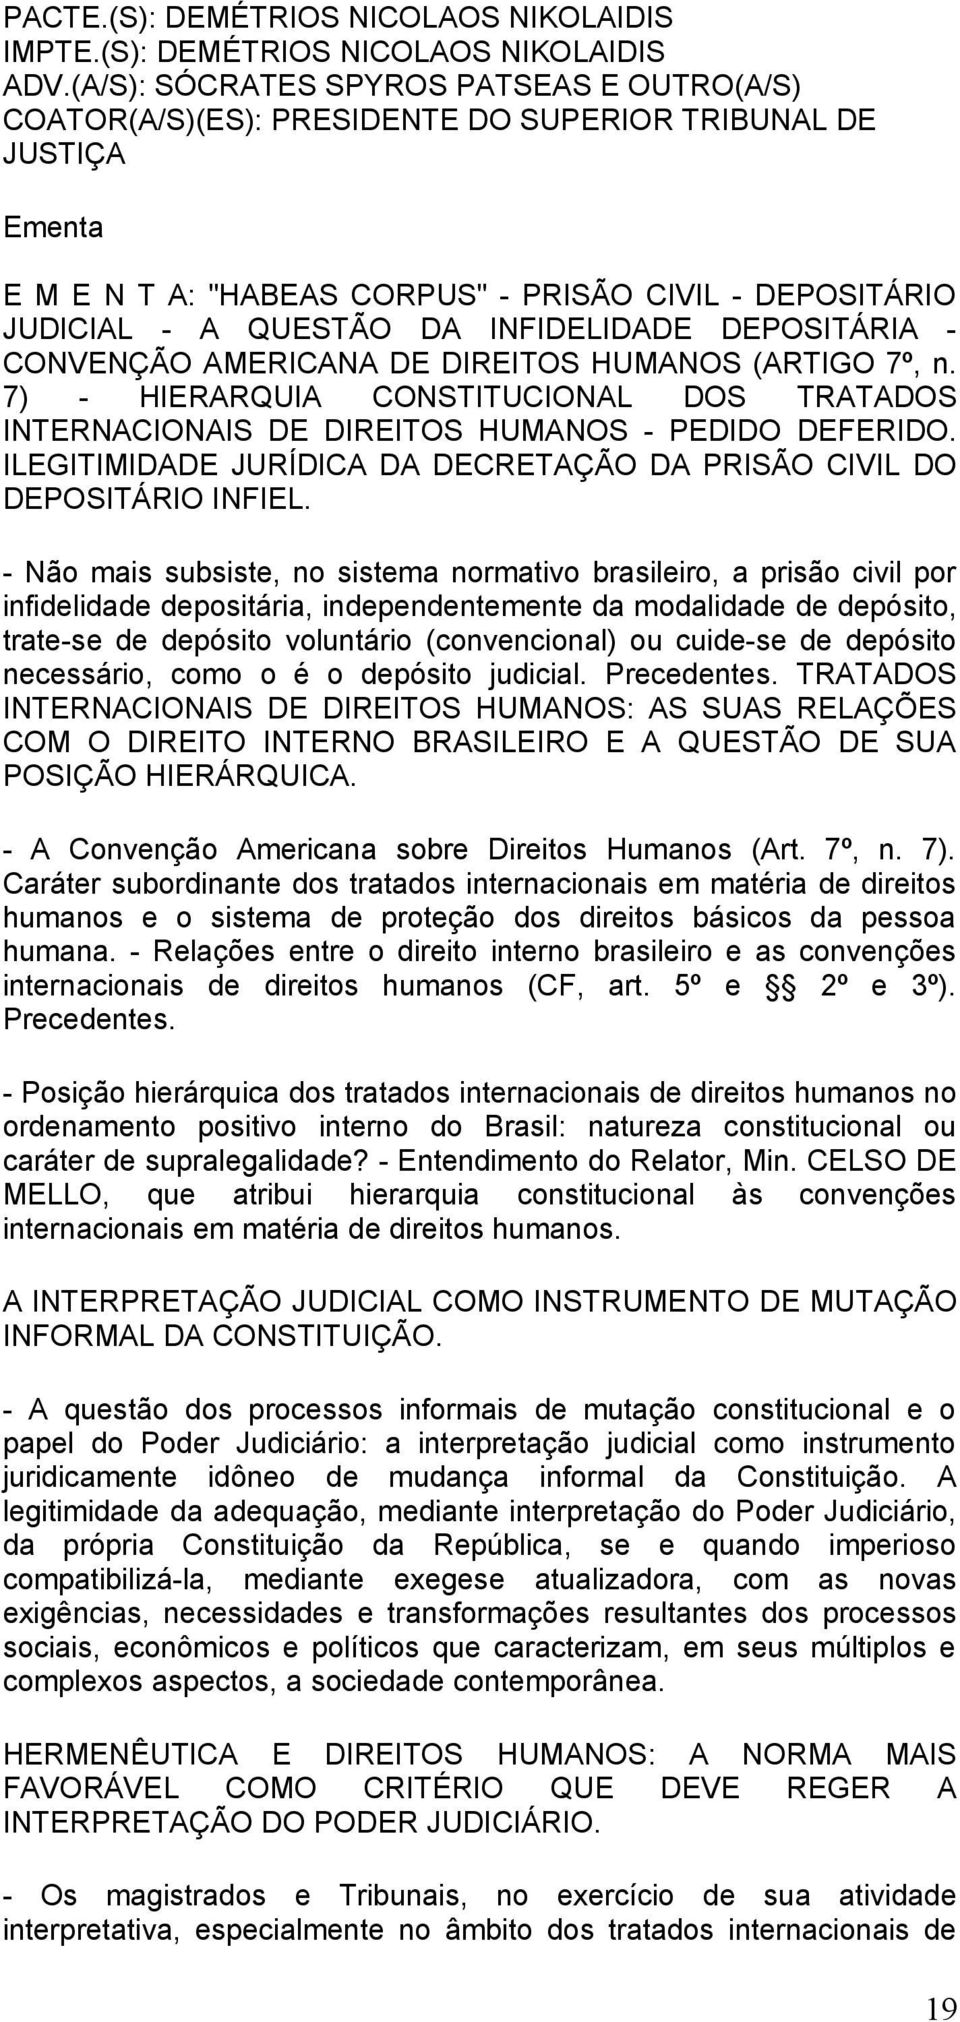 INFIDELIDADE DEPOSITÁRIA - CONVENÇÃO AMERICANA DE DIREITOS HUMANOS (ARTIGO 7º, n. 7) - HIERARQUIA CONSTITUCIONAL DOS TRATADOS INTERNACIONAIS DE DIREITOS HUMANOS - PEDIDO DEFERIDO.